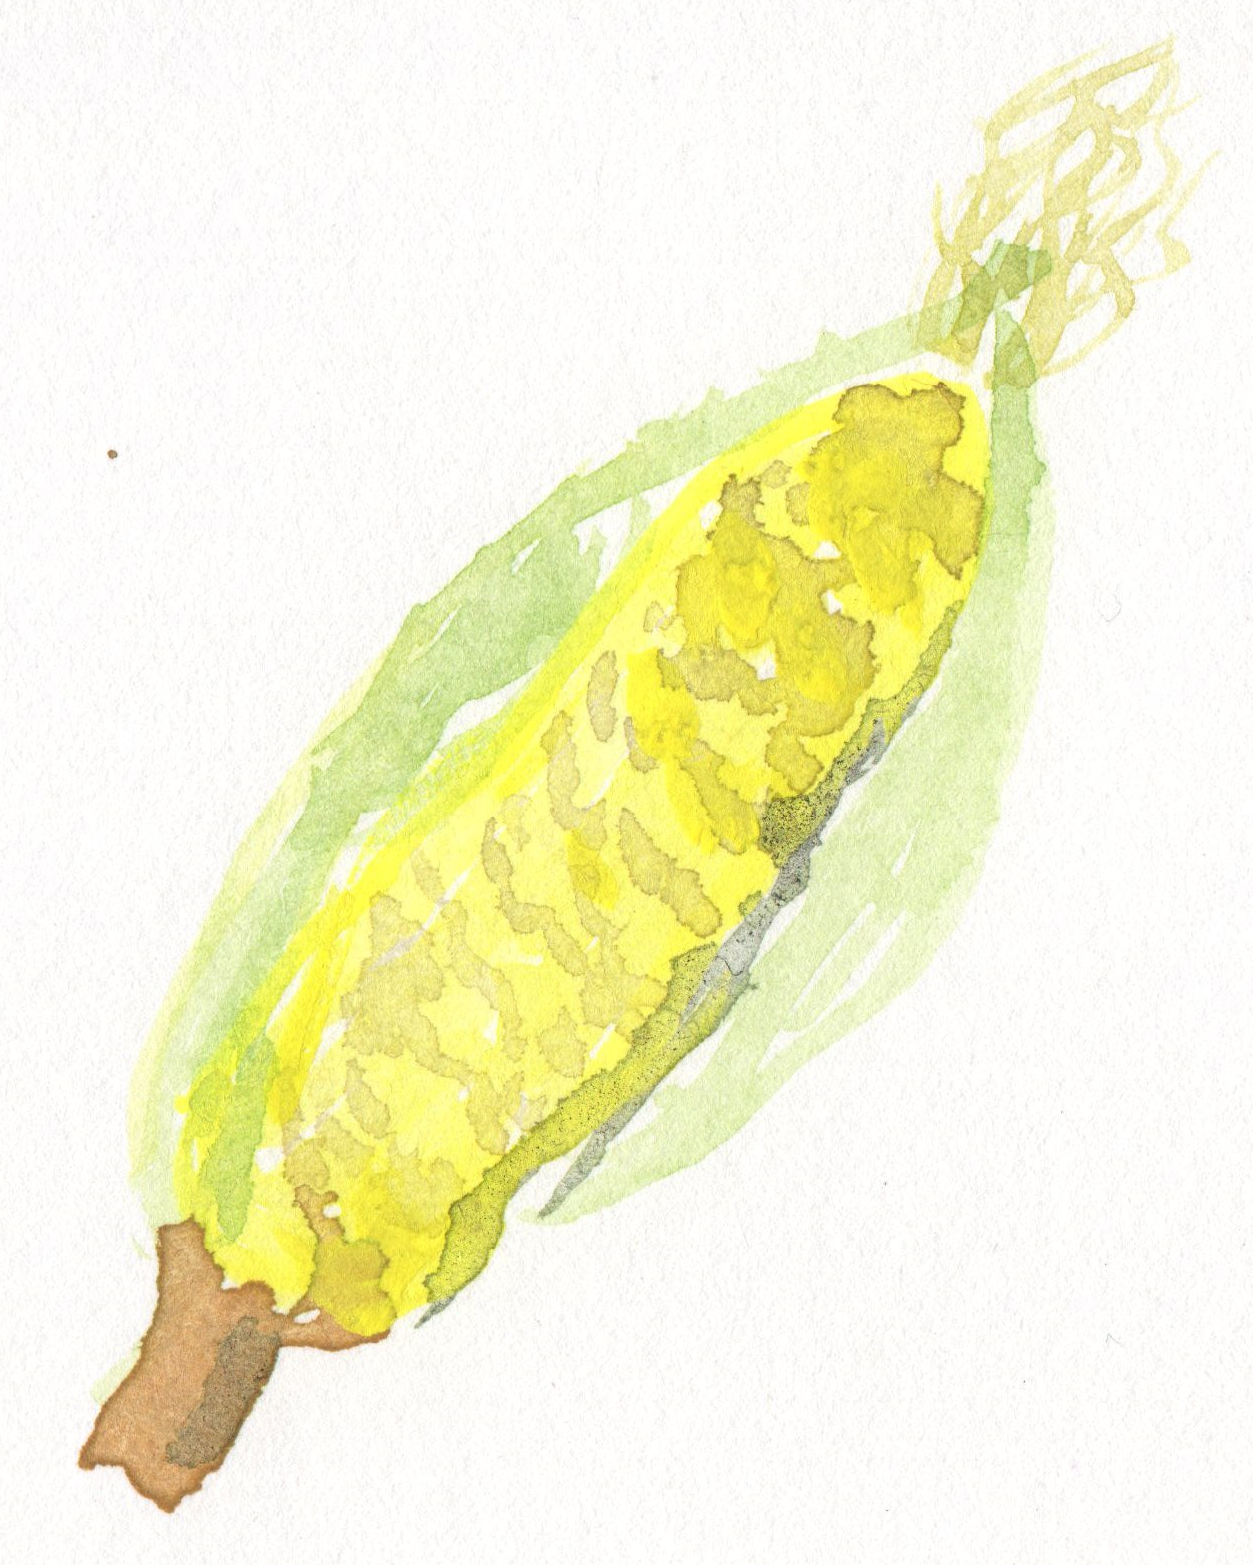 トウモロコシ 野菜の手書き無料素材イラスト画像集